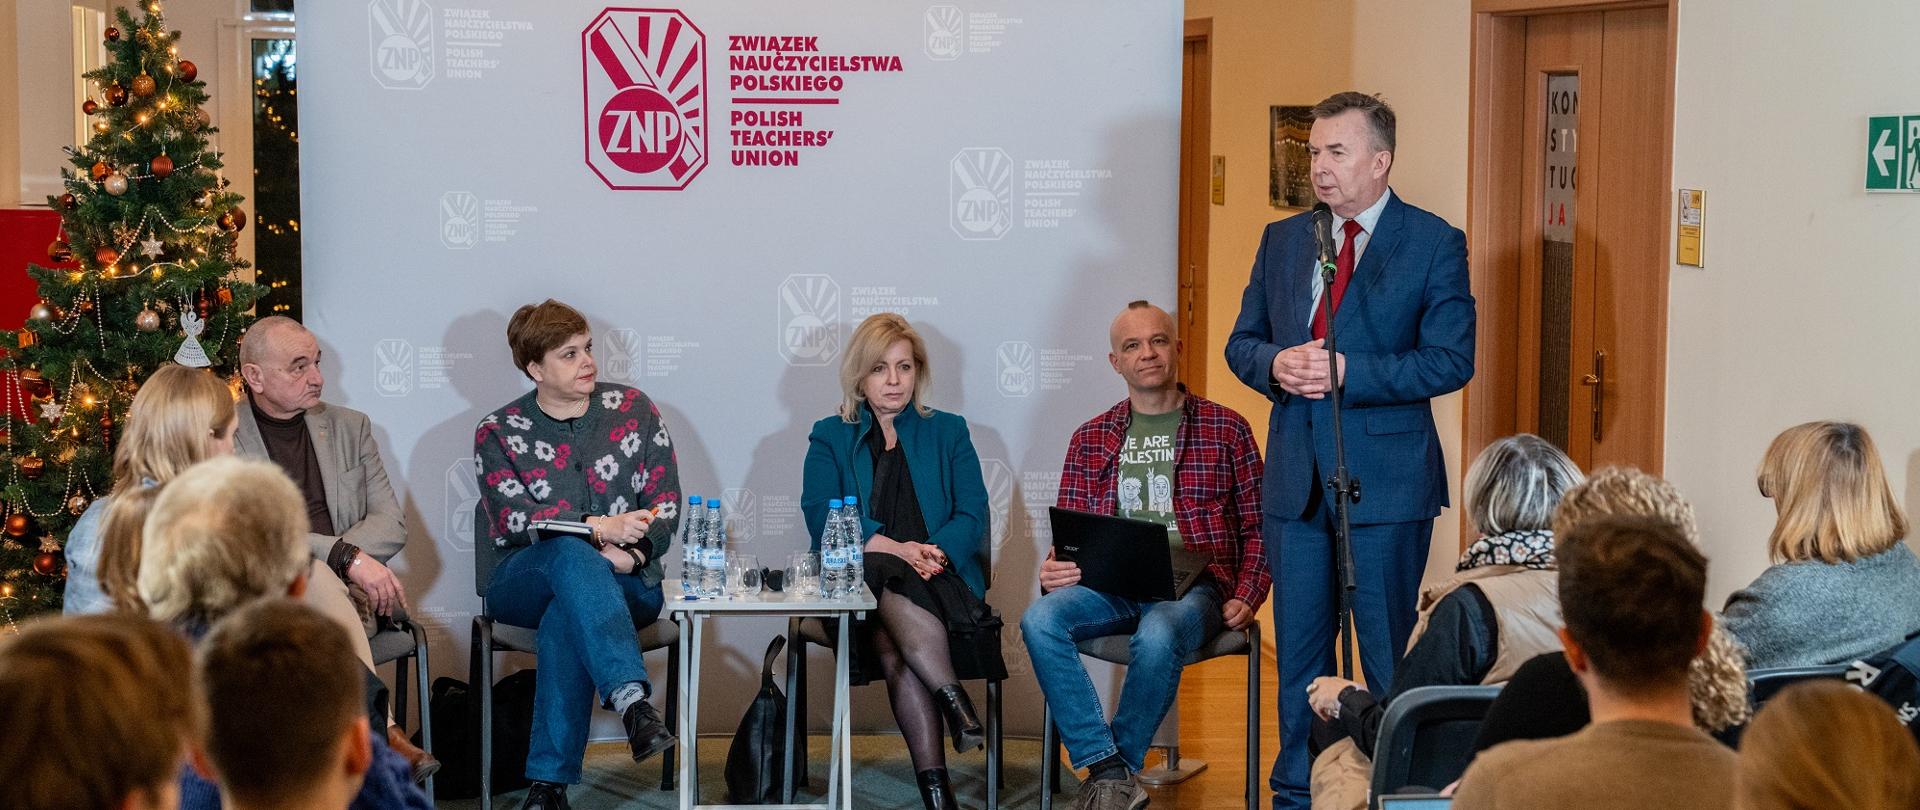 W sali na ustawionych w rzędy krzesłach siedzą ludzie, przed nimi pod ścianką z napisem Związek Nauczycielstwa Polskiego siedzą cztery osoby, z boku stoi minister Wieczorek i mówi do mikrofonu na stojaku.